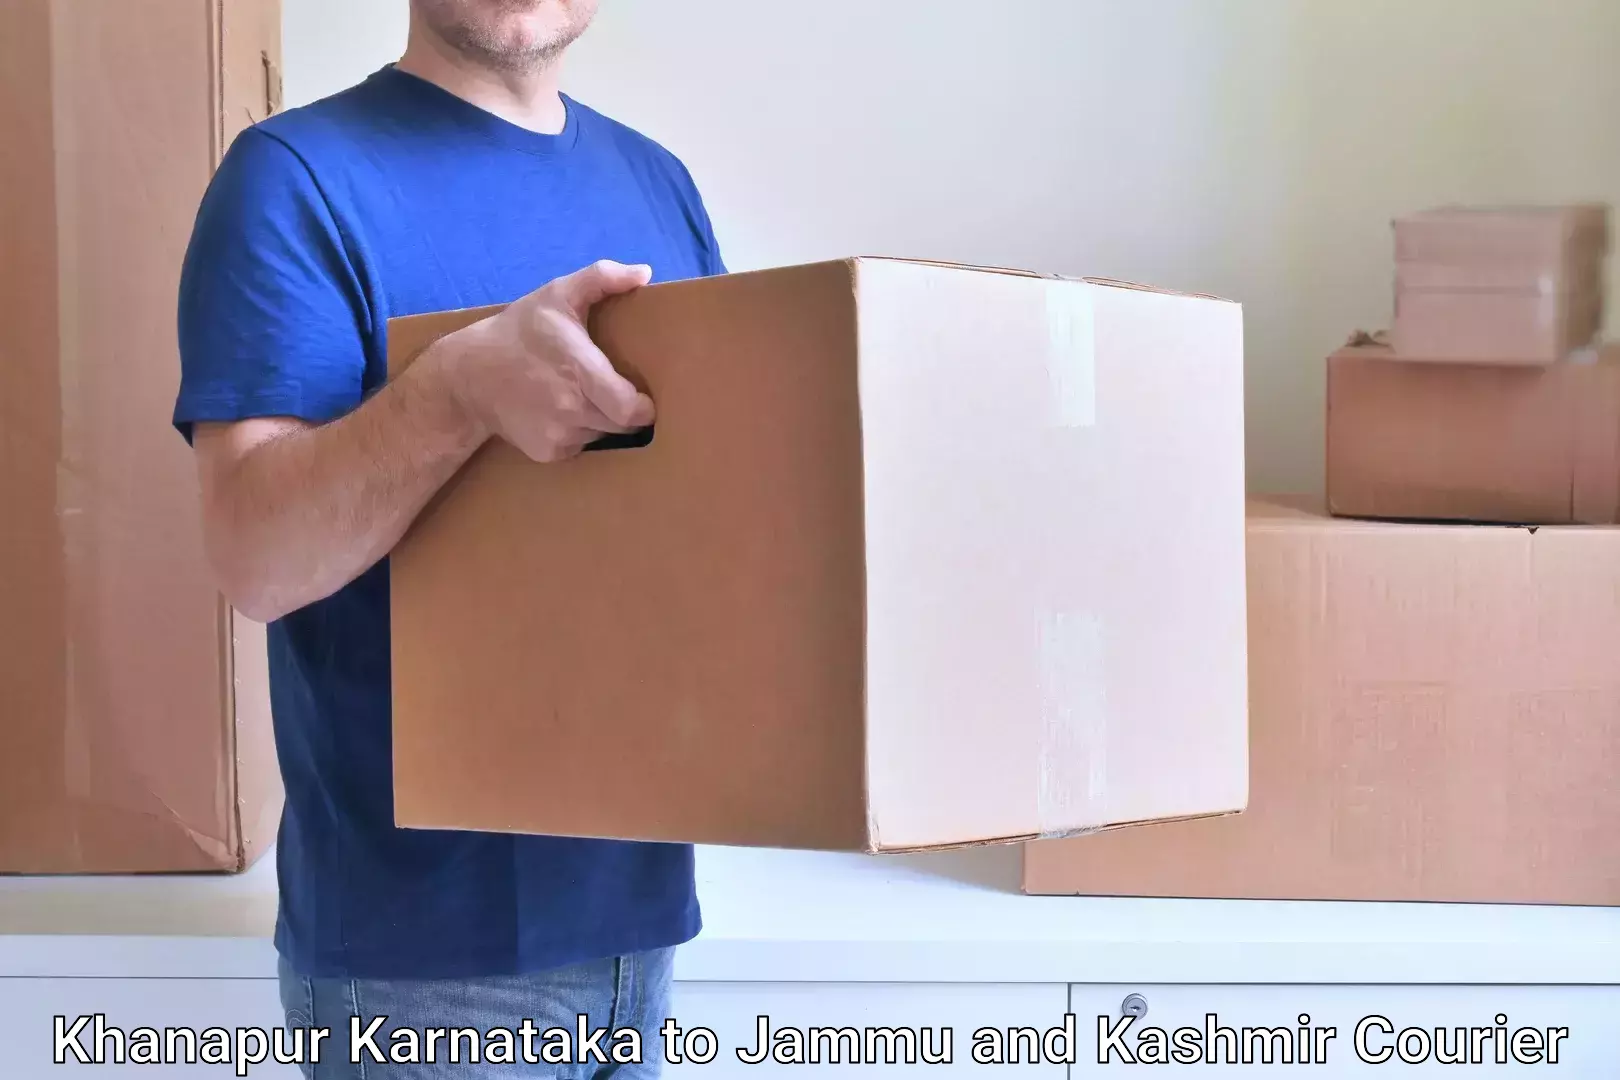 Efficient parcel transport Khanapur Karnataka to Ramban